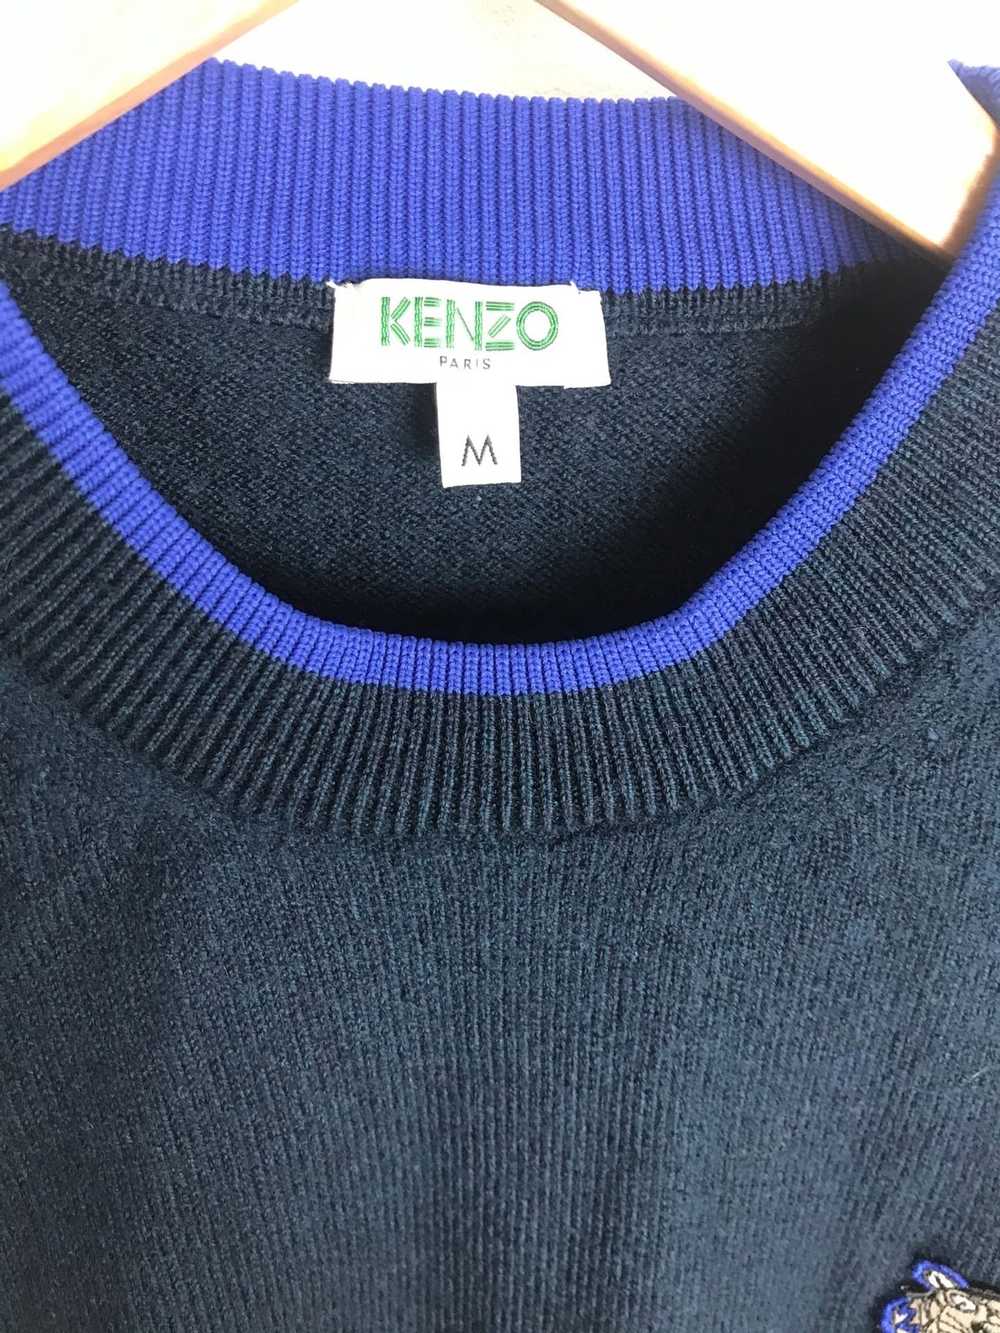 Kenzo kenzo sweater - image 2